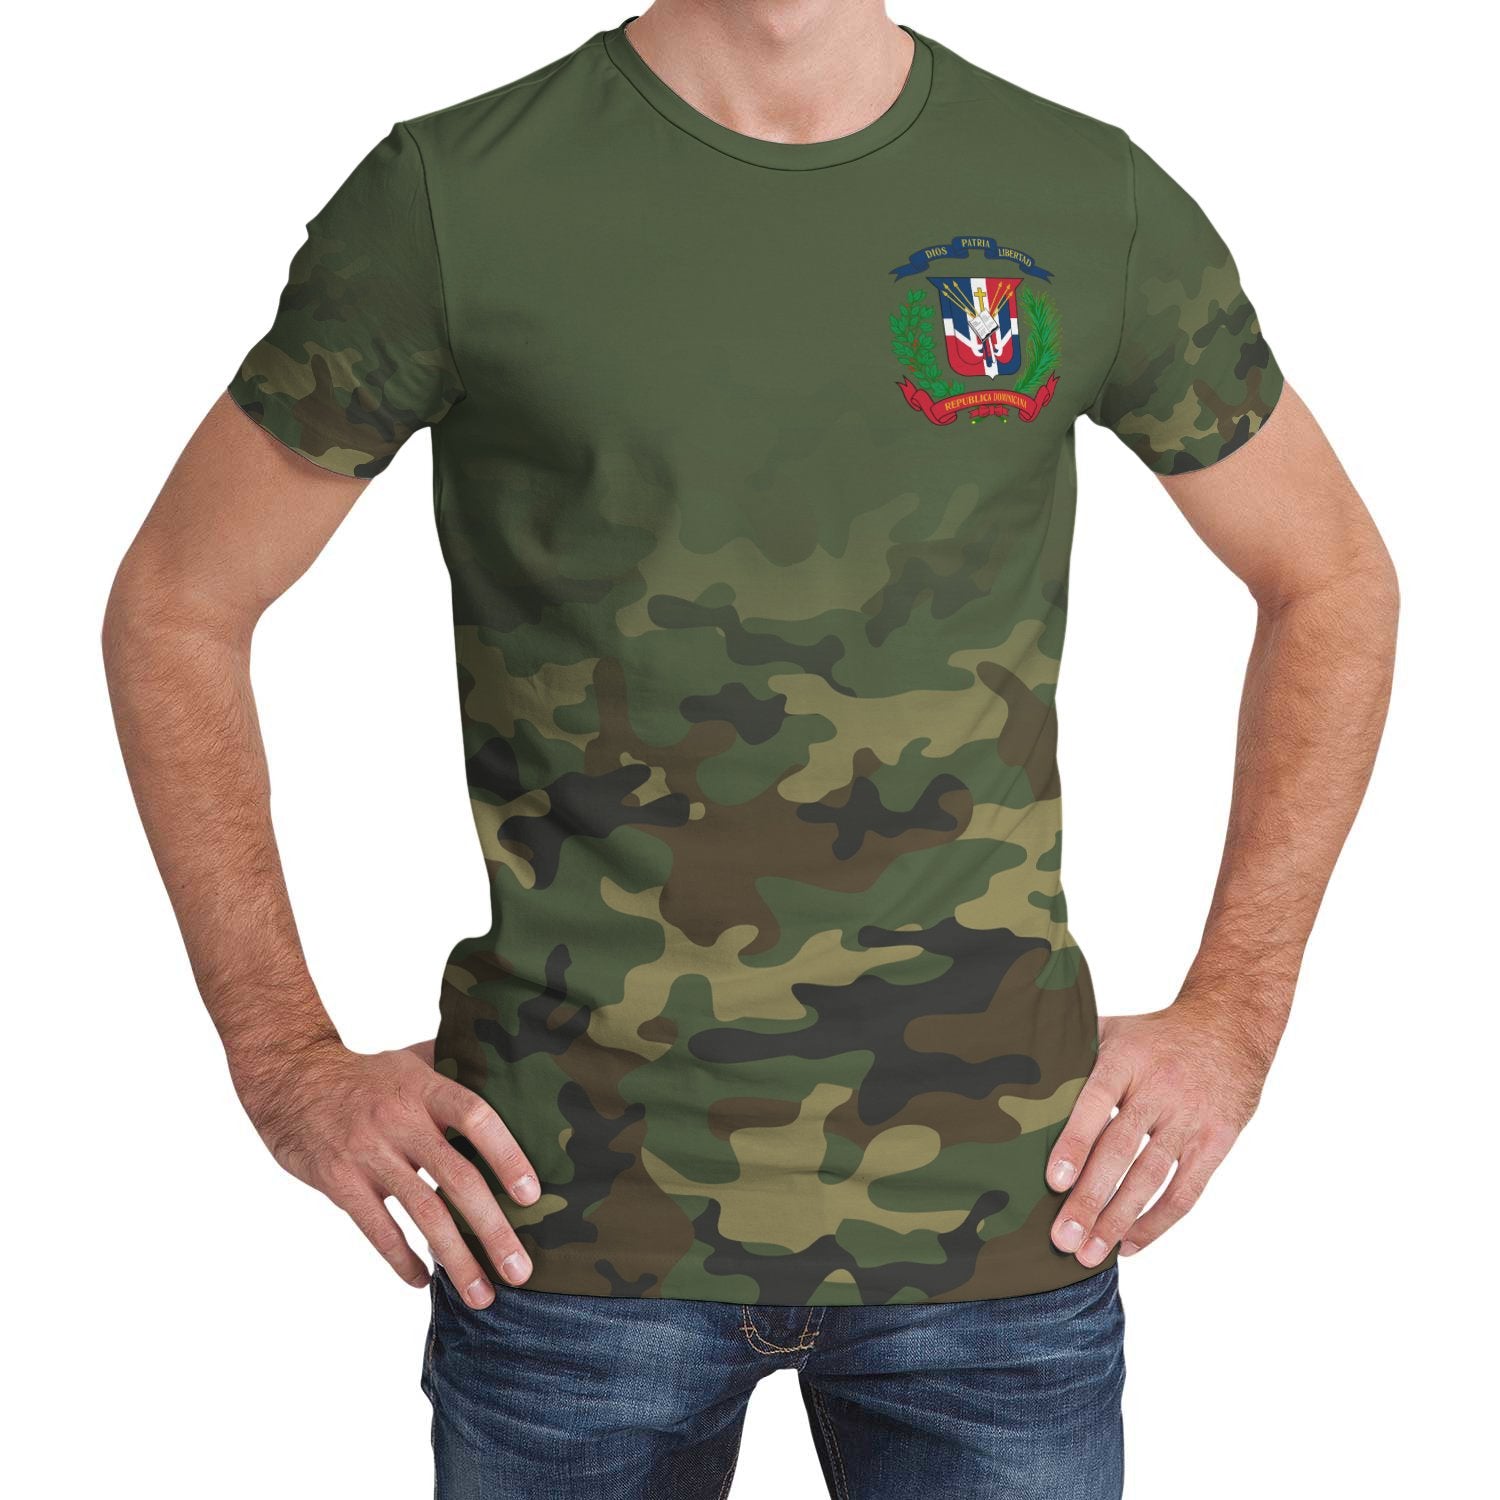 dominican-republic-t-shirt-camo-womensmens